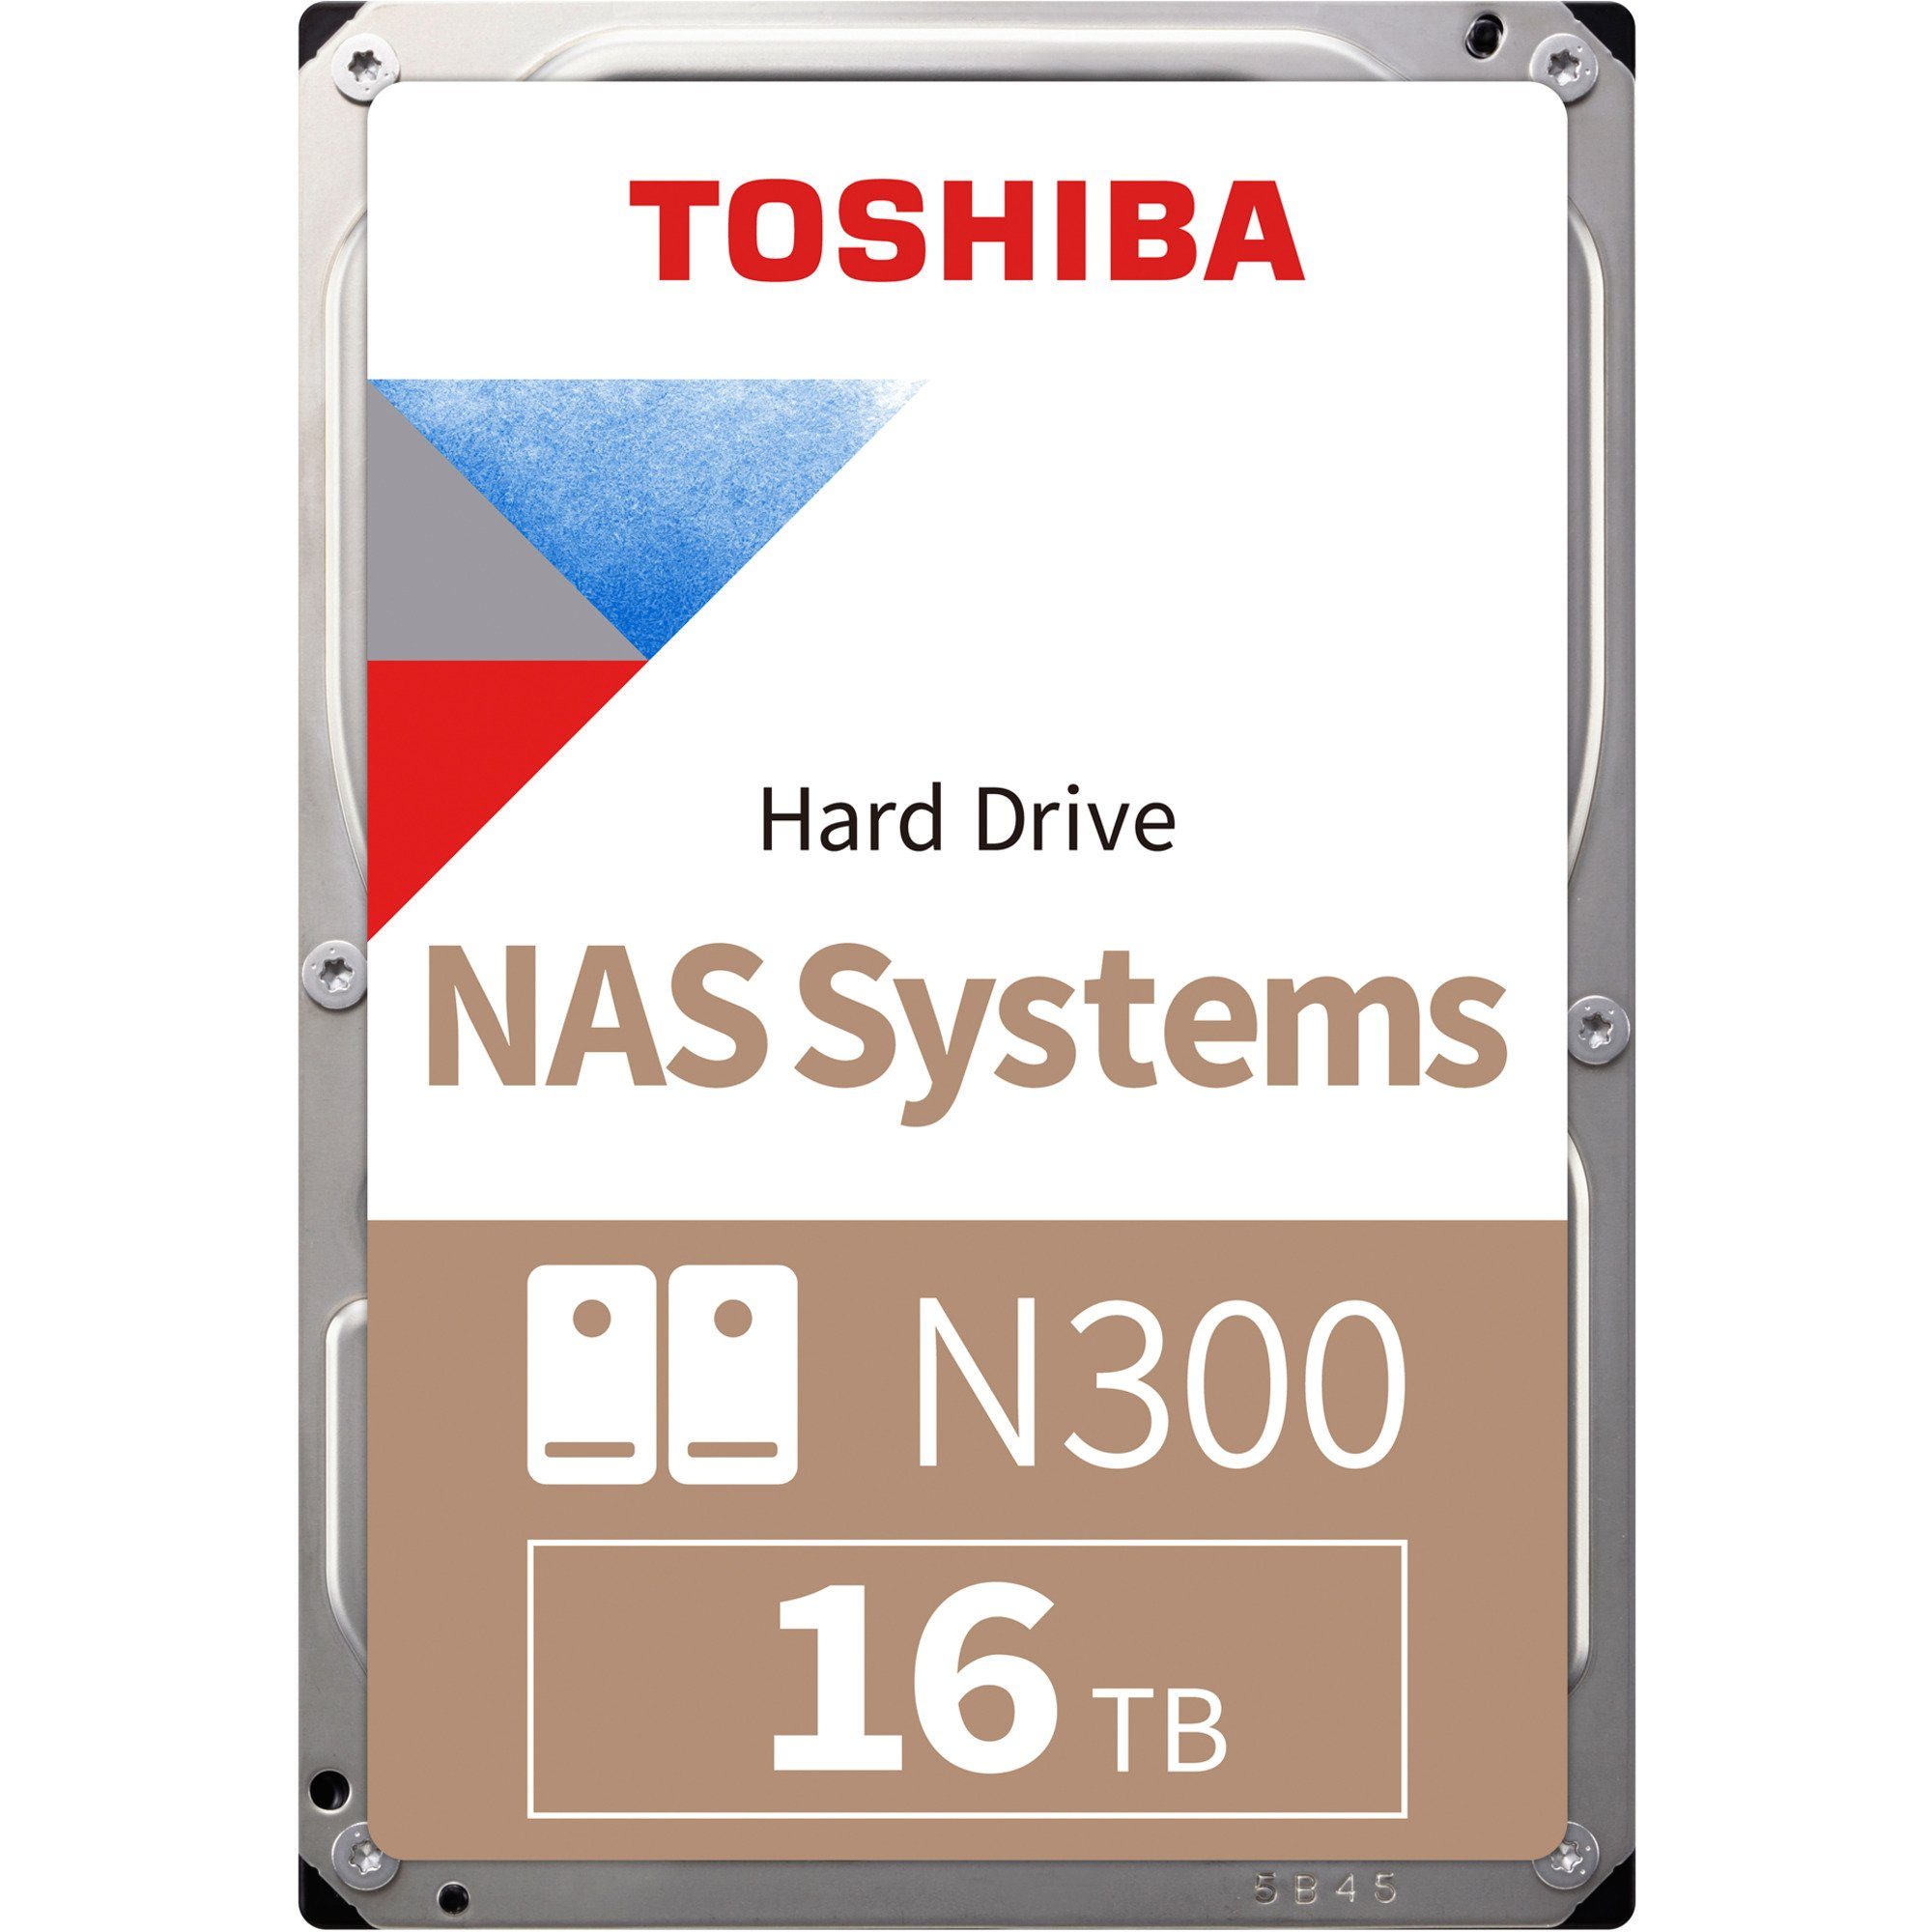 Toshiba N300 16 TB interne HDD-Festplatte